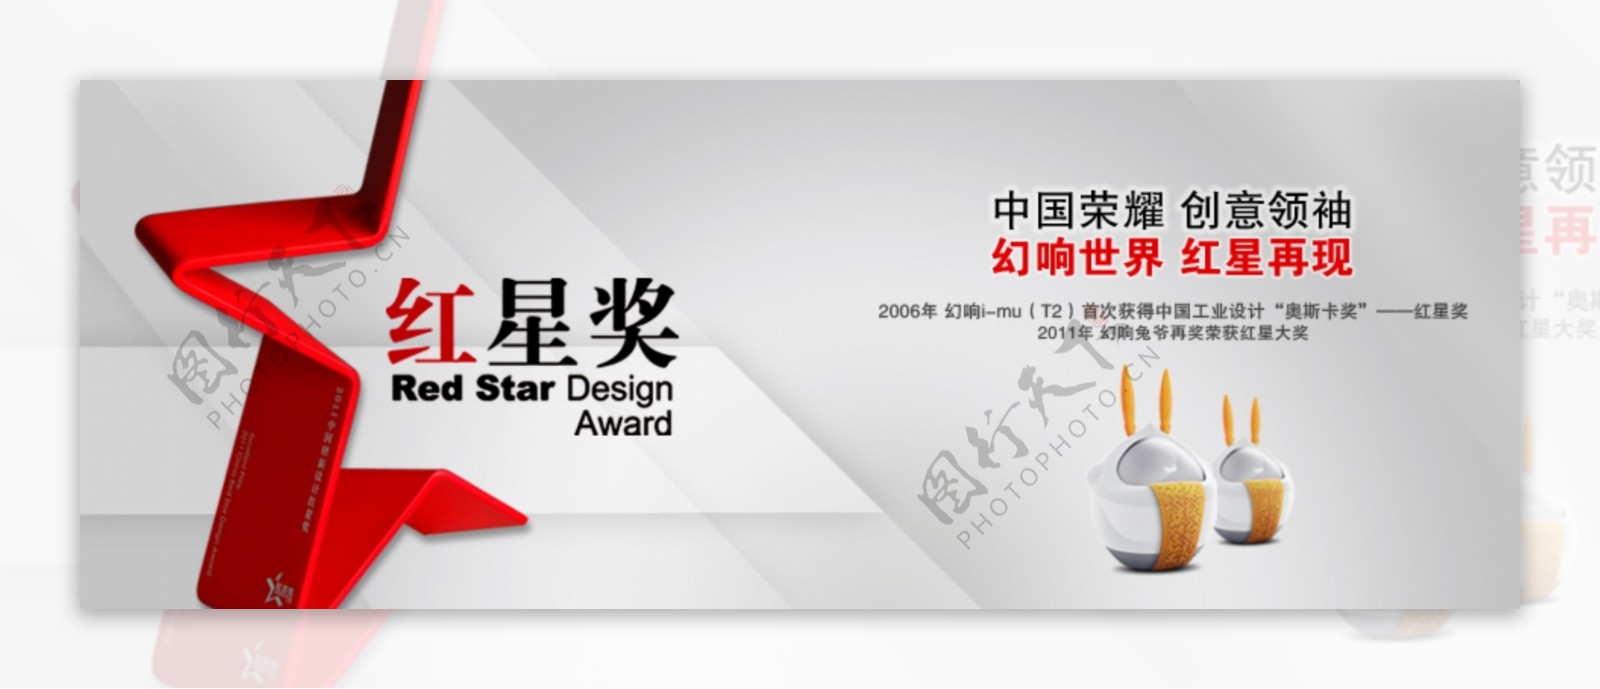 红星奖网页宣传广告图片